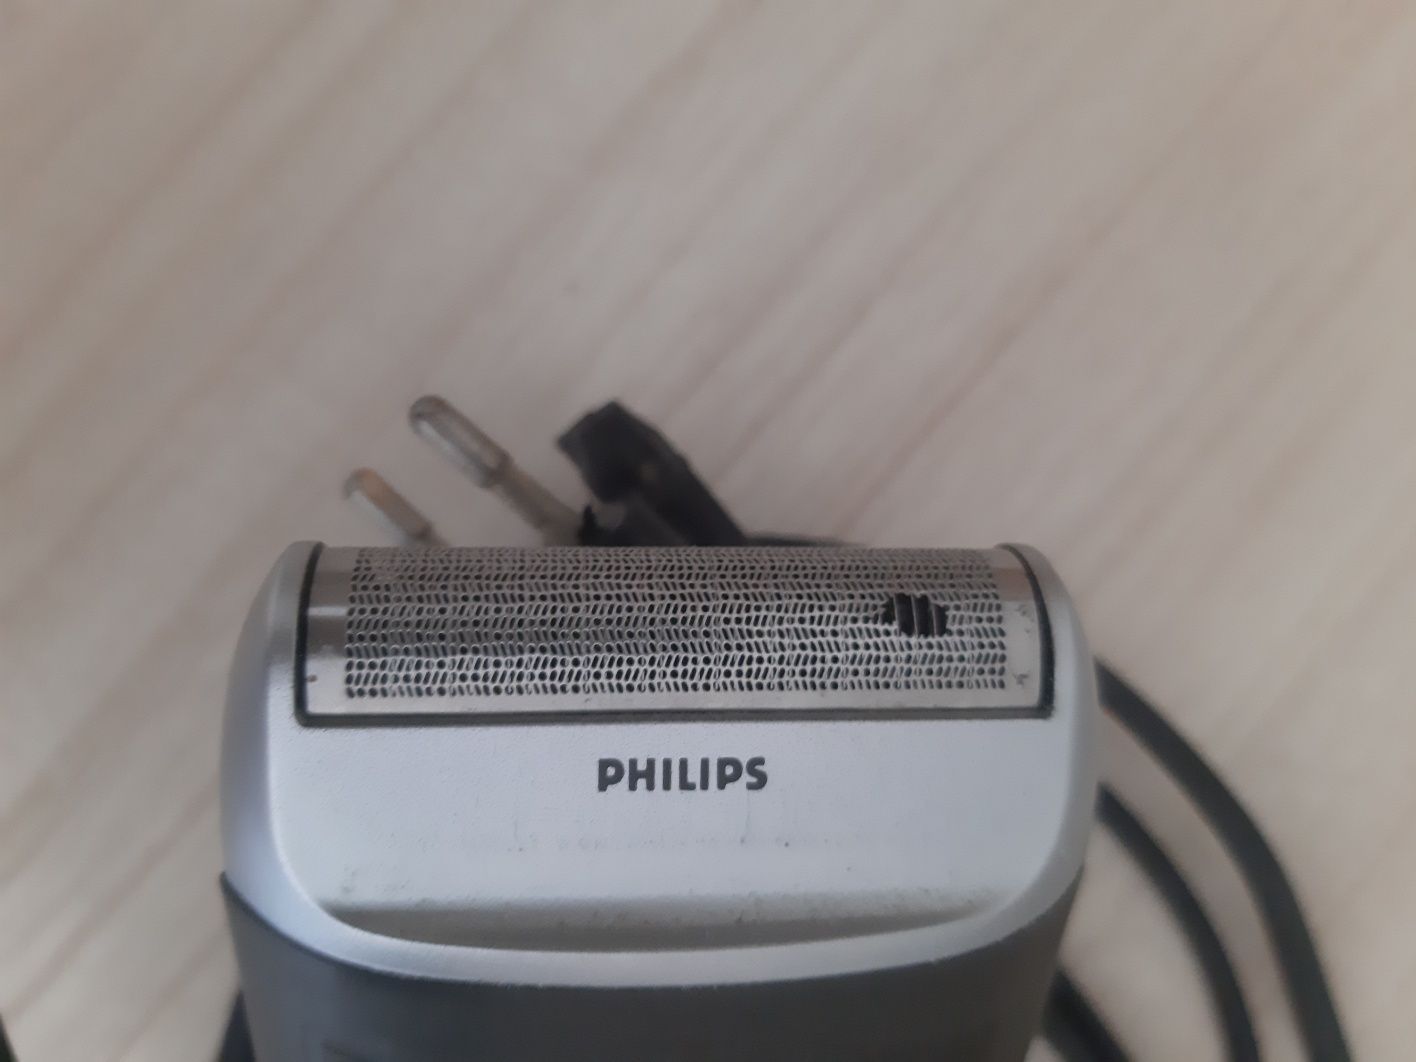 Maszynka Philips do golenia vintage prl sweden kolekcja wada golarka